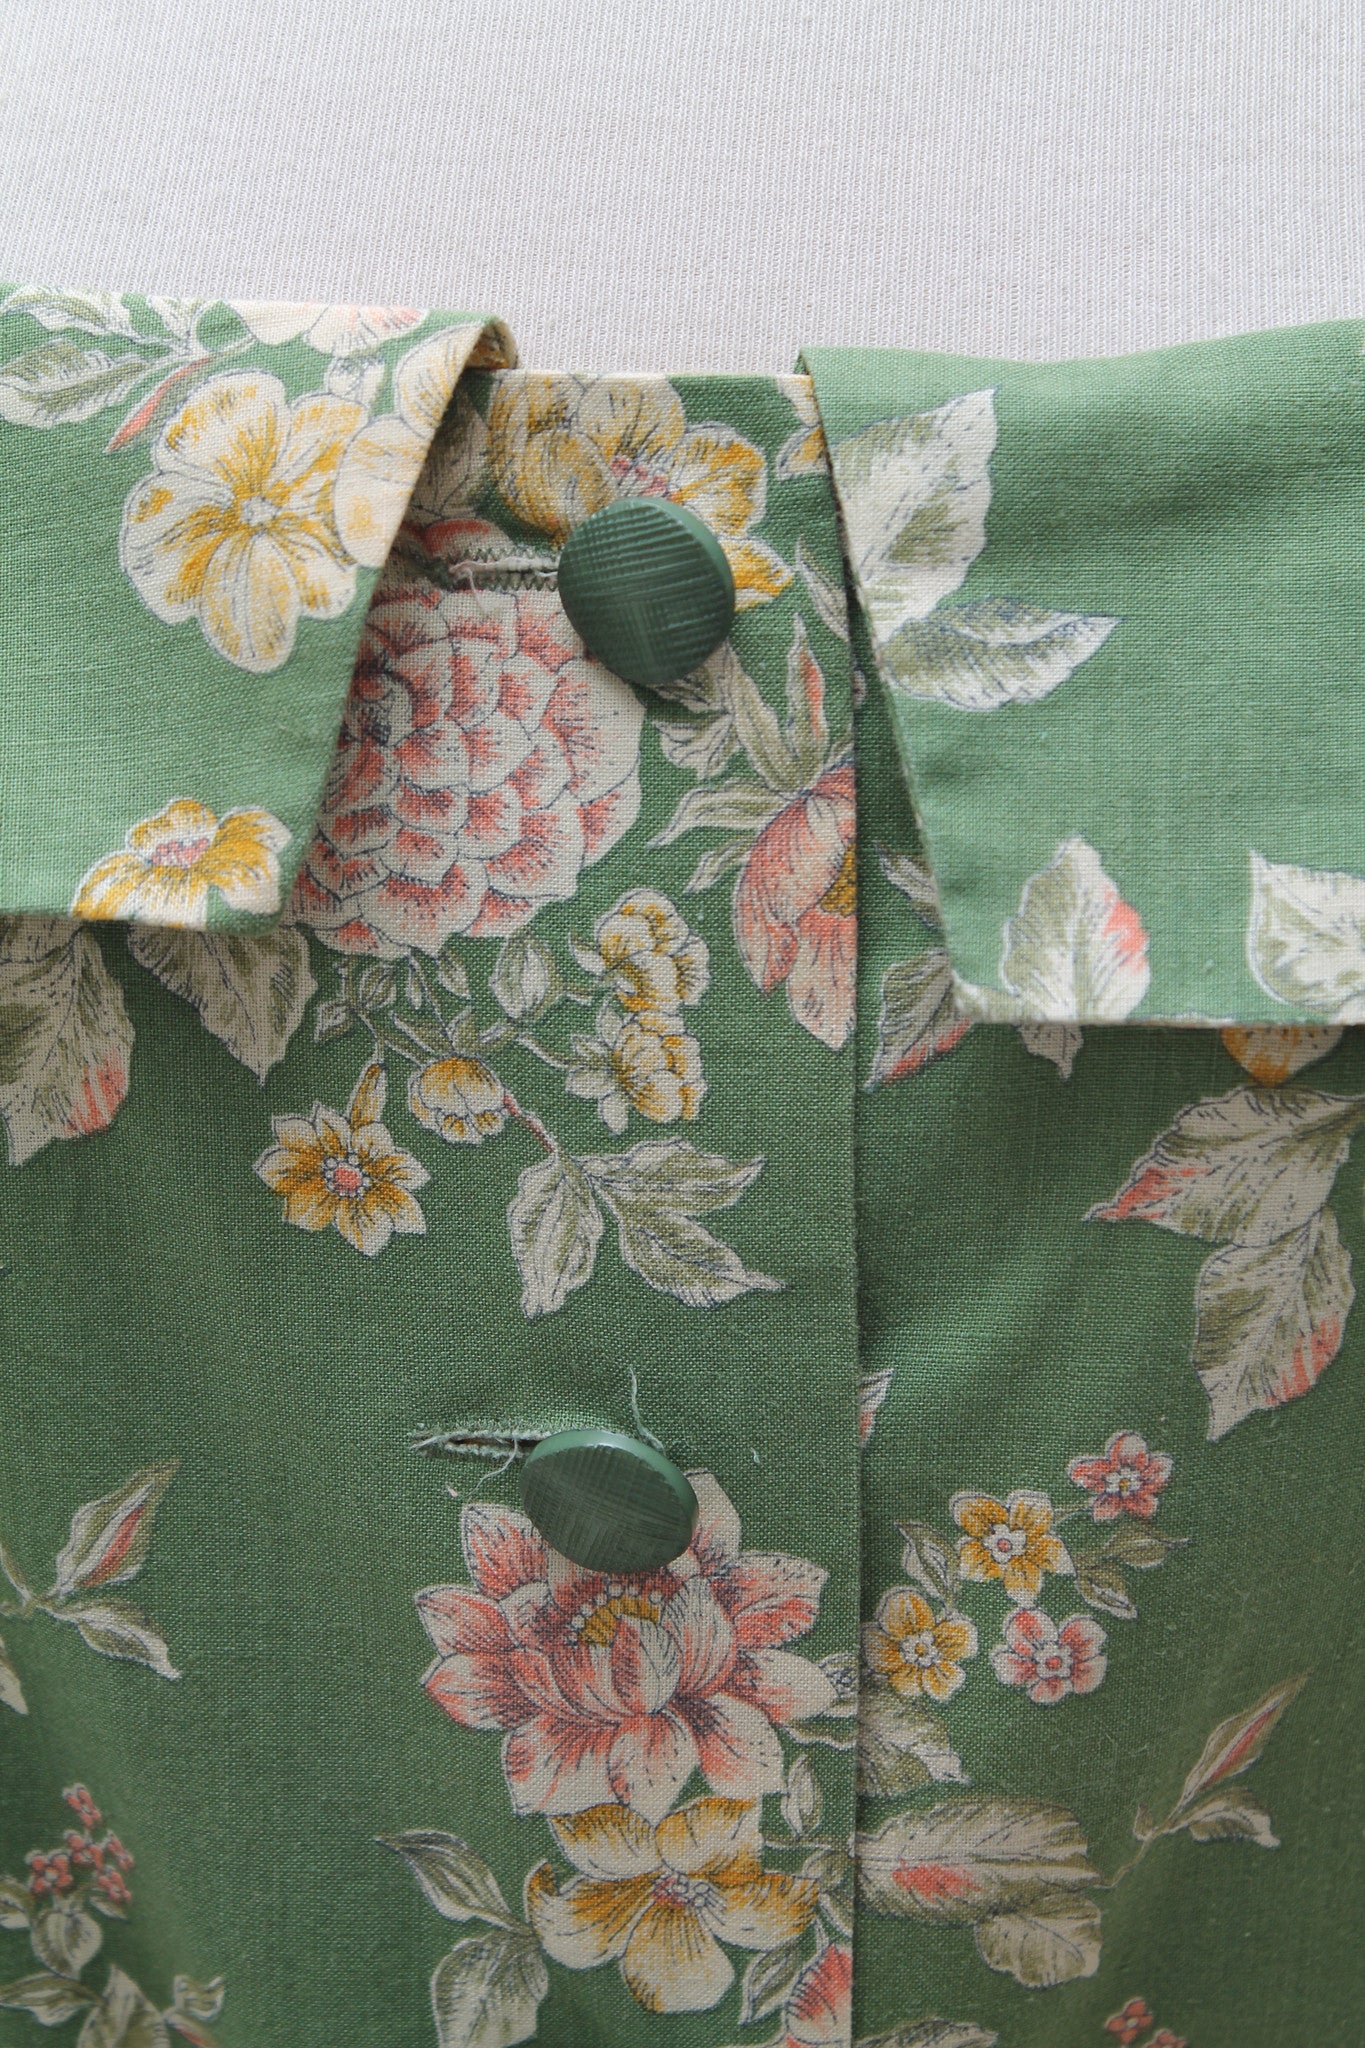 Engelsk blomstret "Tea dress"1960. M